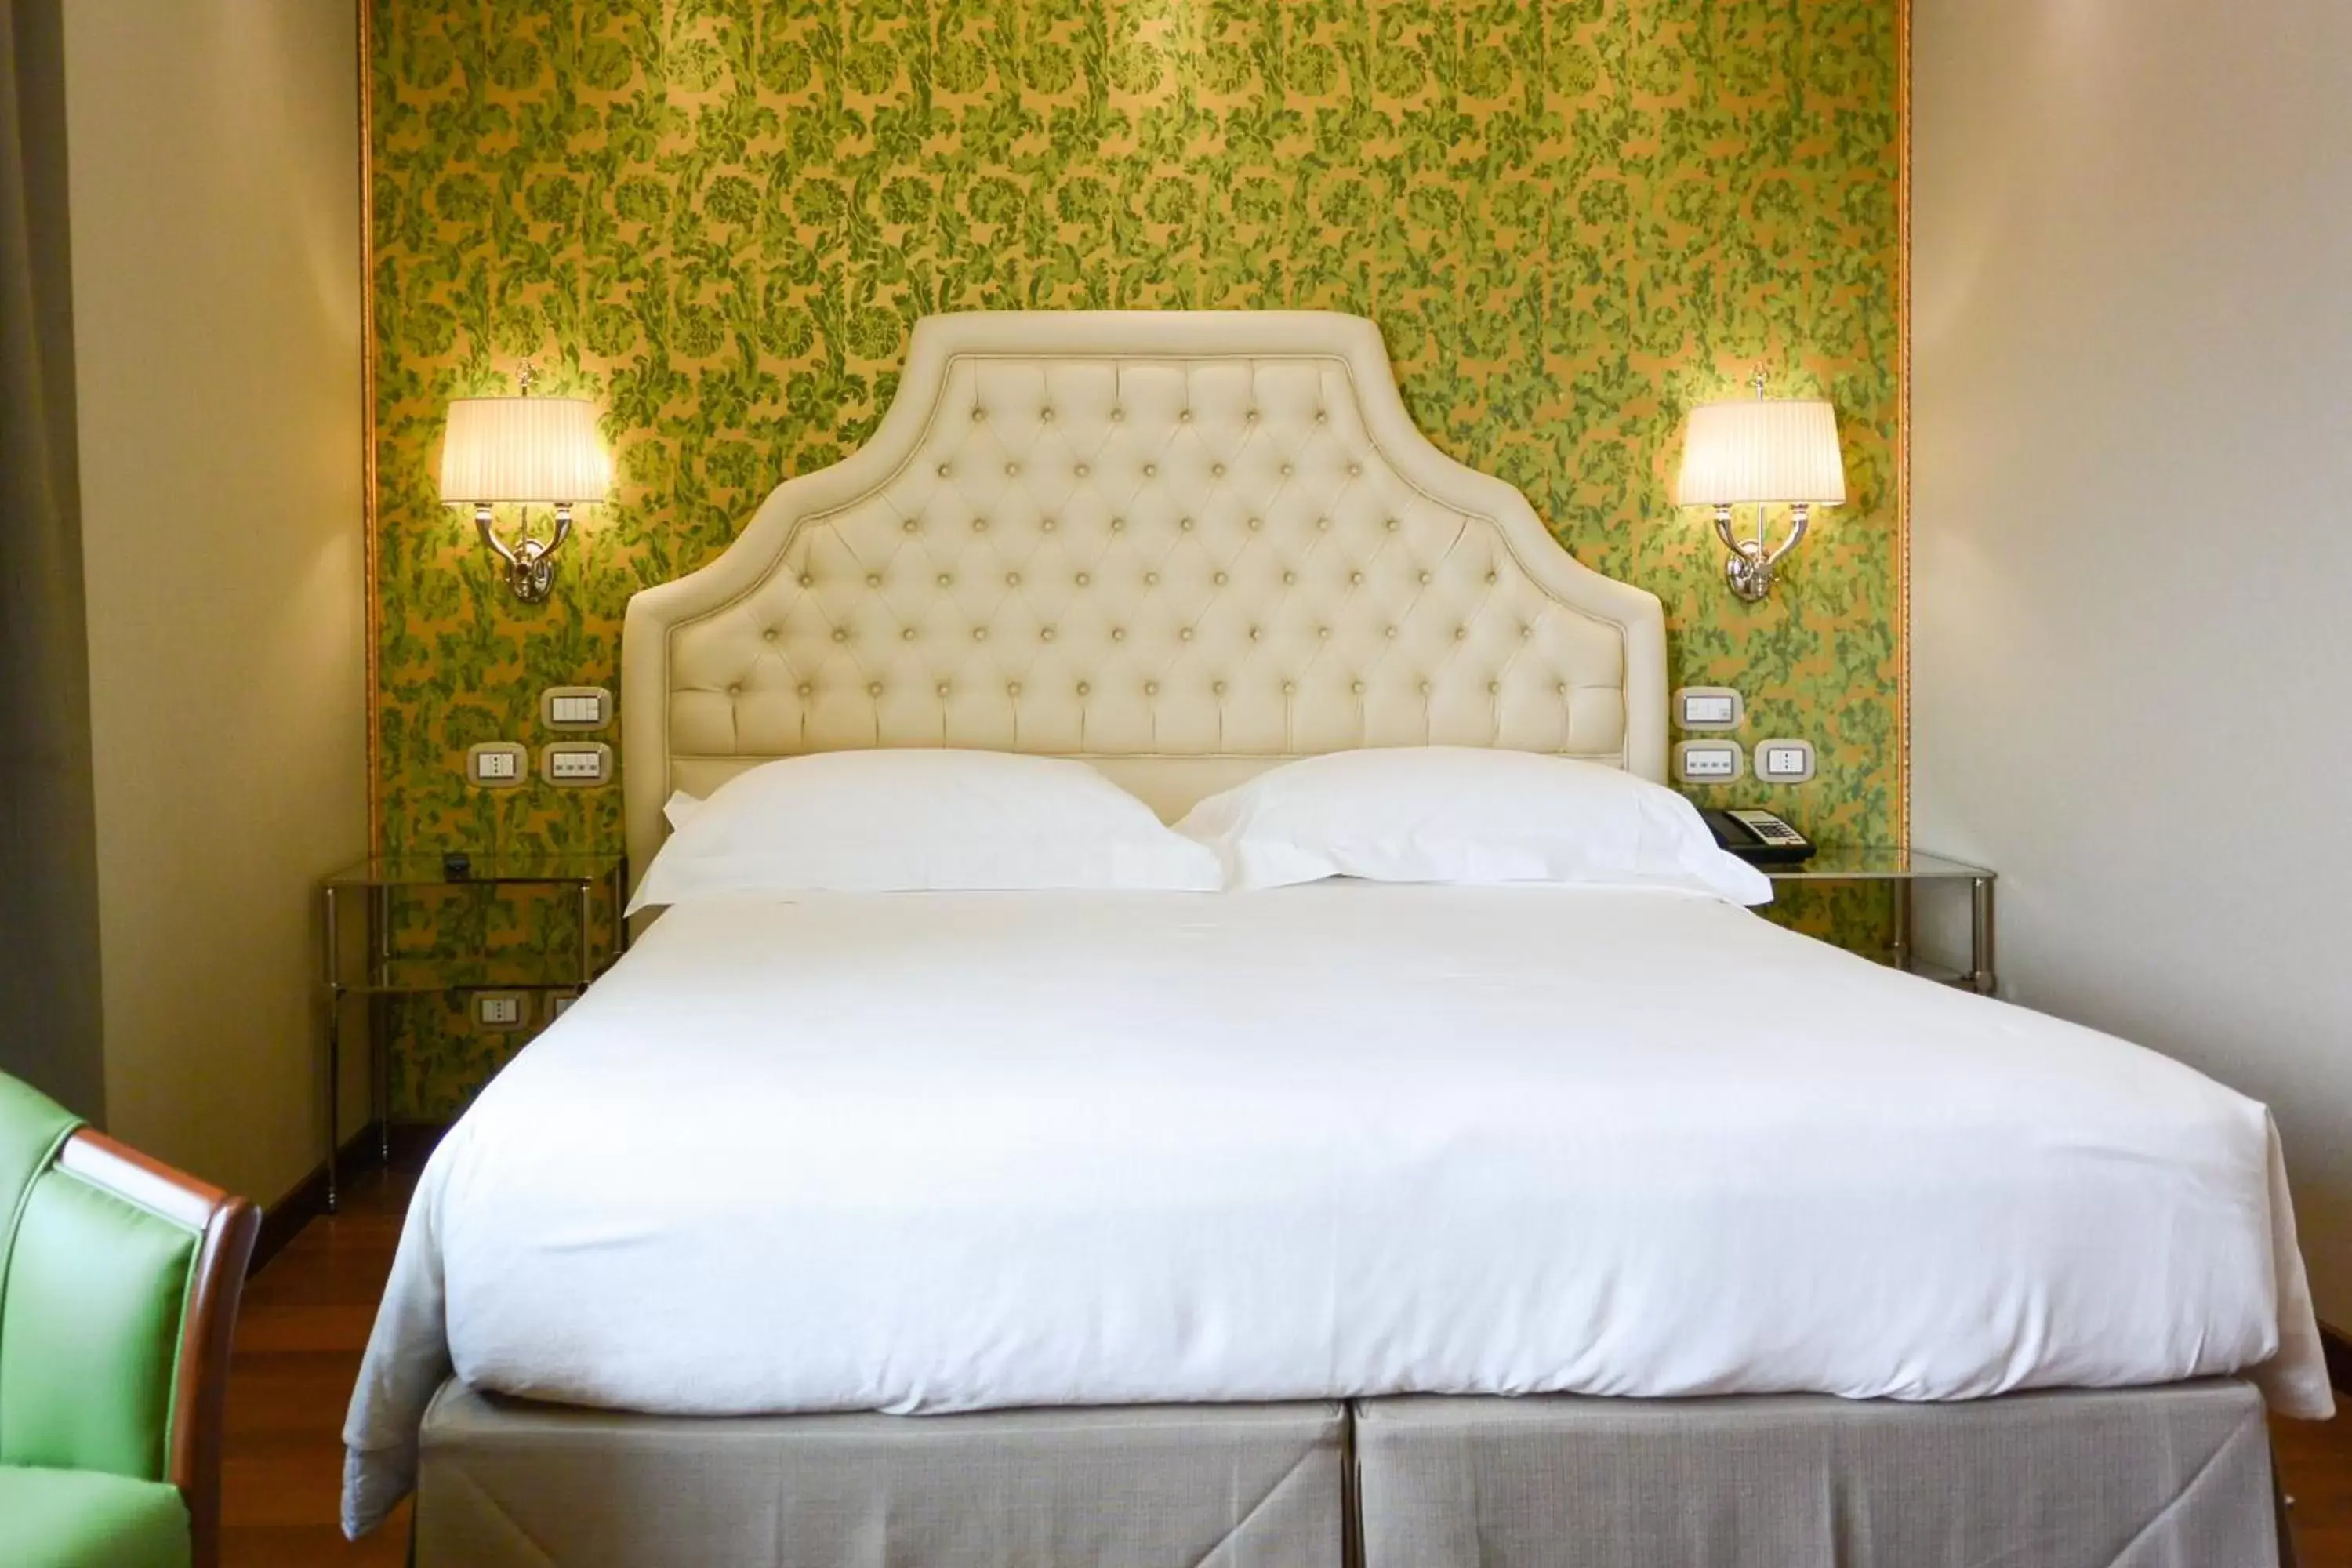 Bed, Room Photo in Hotel Santa Chiara